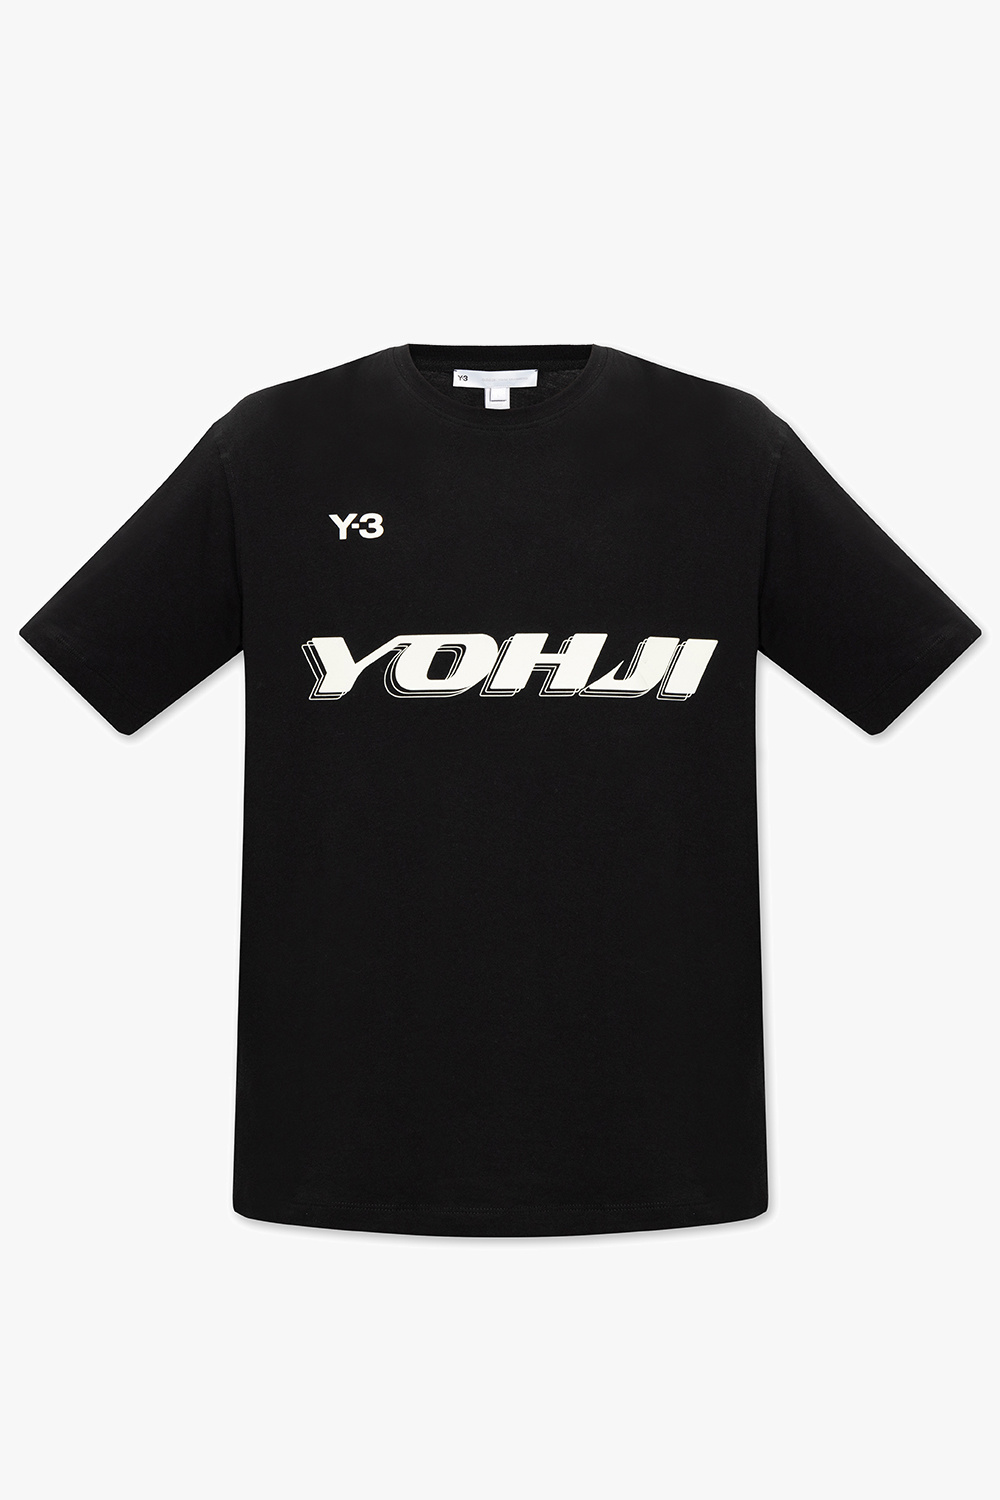 Y-3 Yohji Yamamoto Logo T-shirt | Men's Clothing | Vitkac